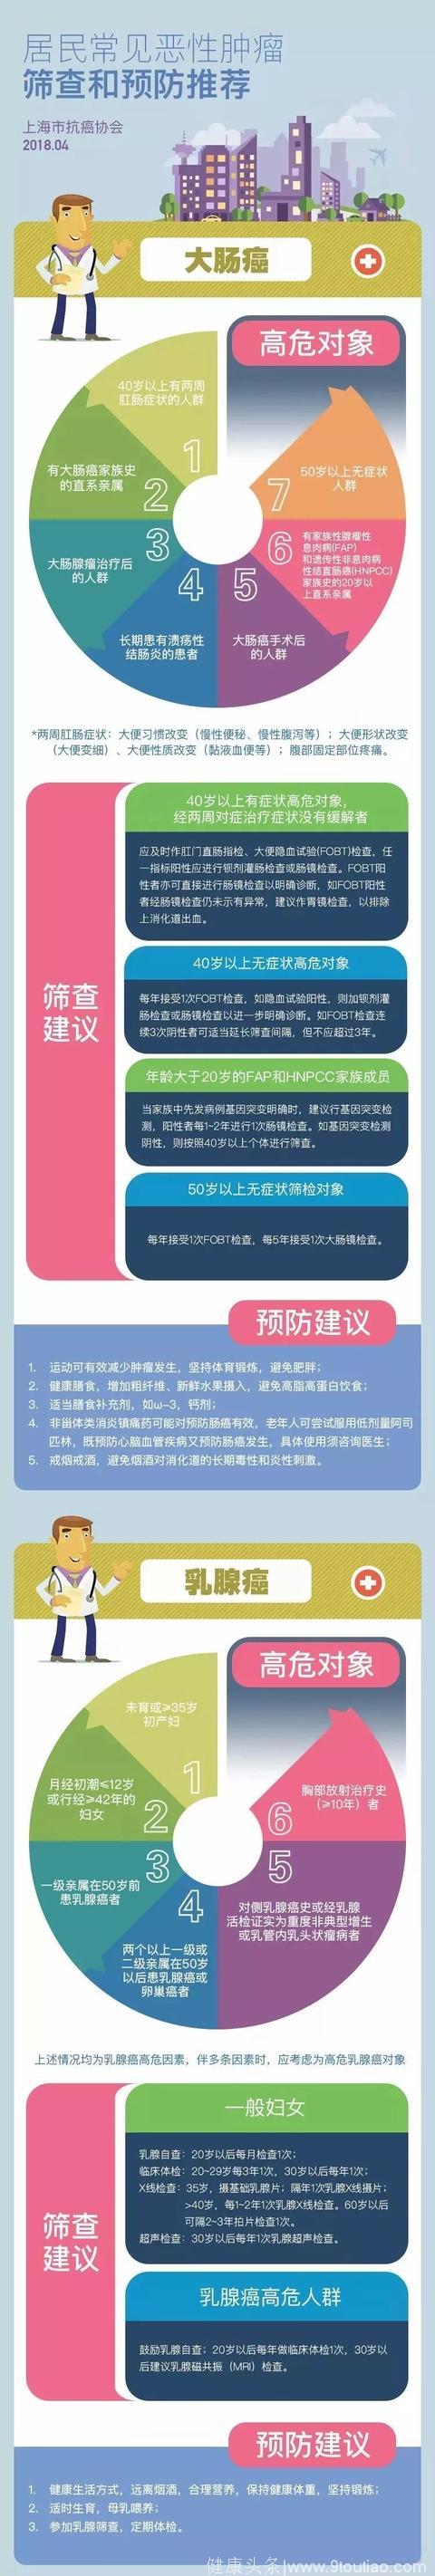 国人7大高发癌症怎么防？如何筛？上海抗癌协会给出权威指南！